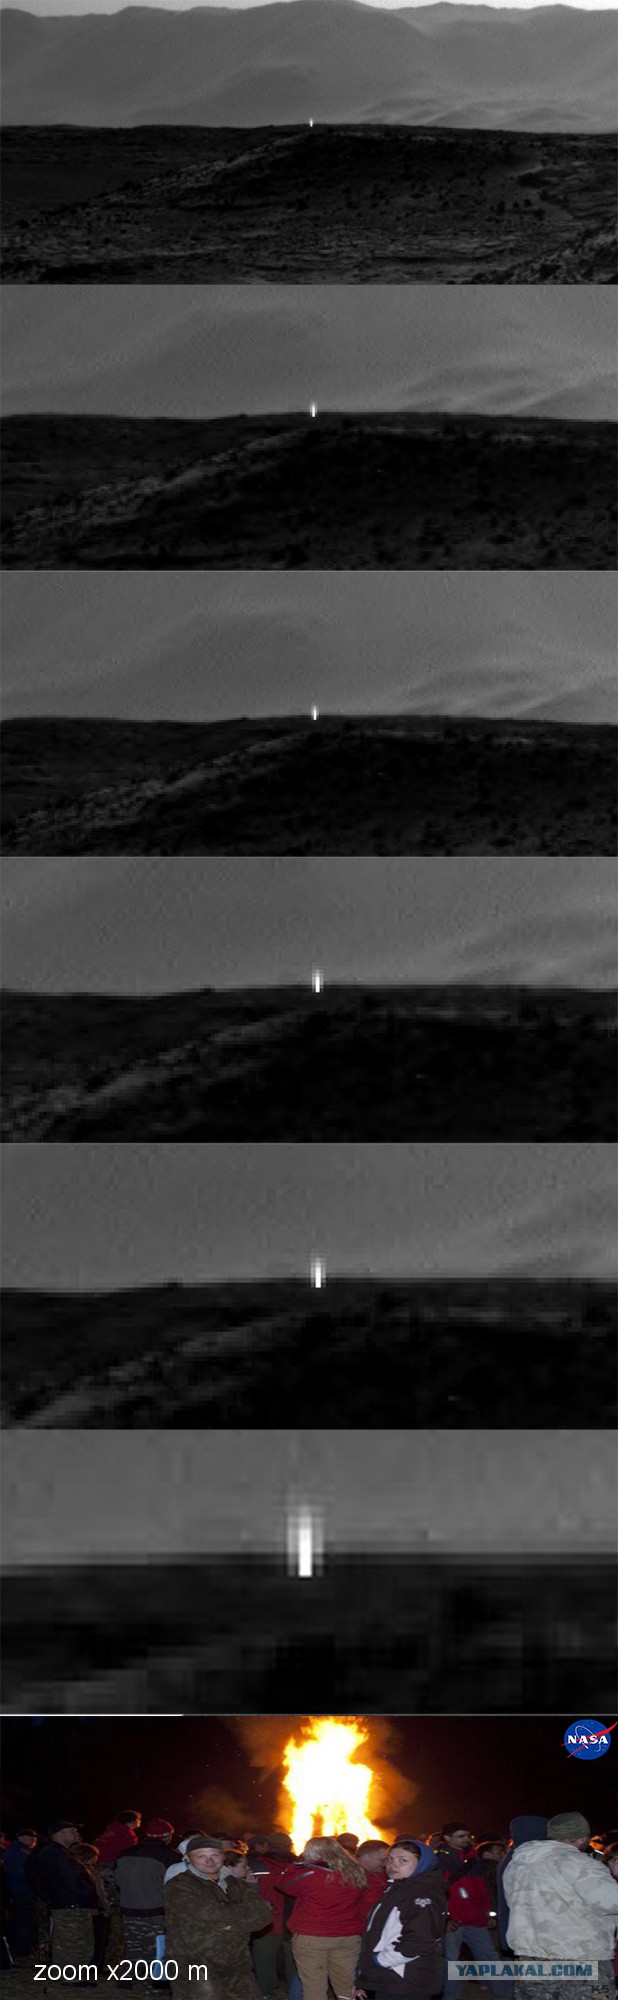 Неопознанный источник света на Марсе